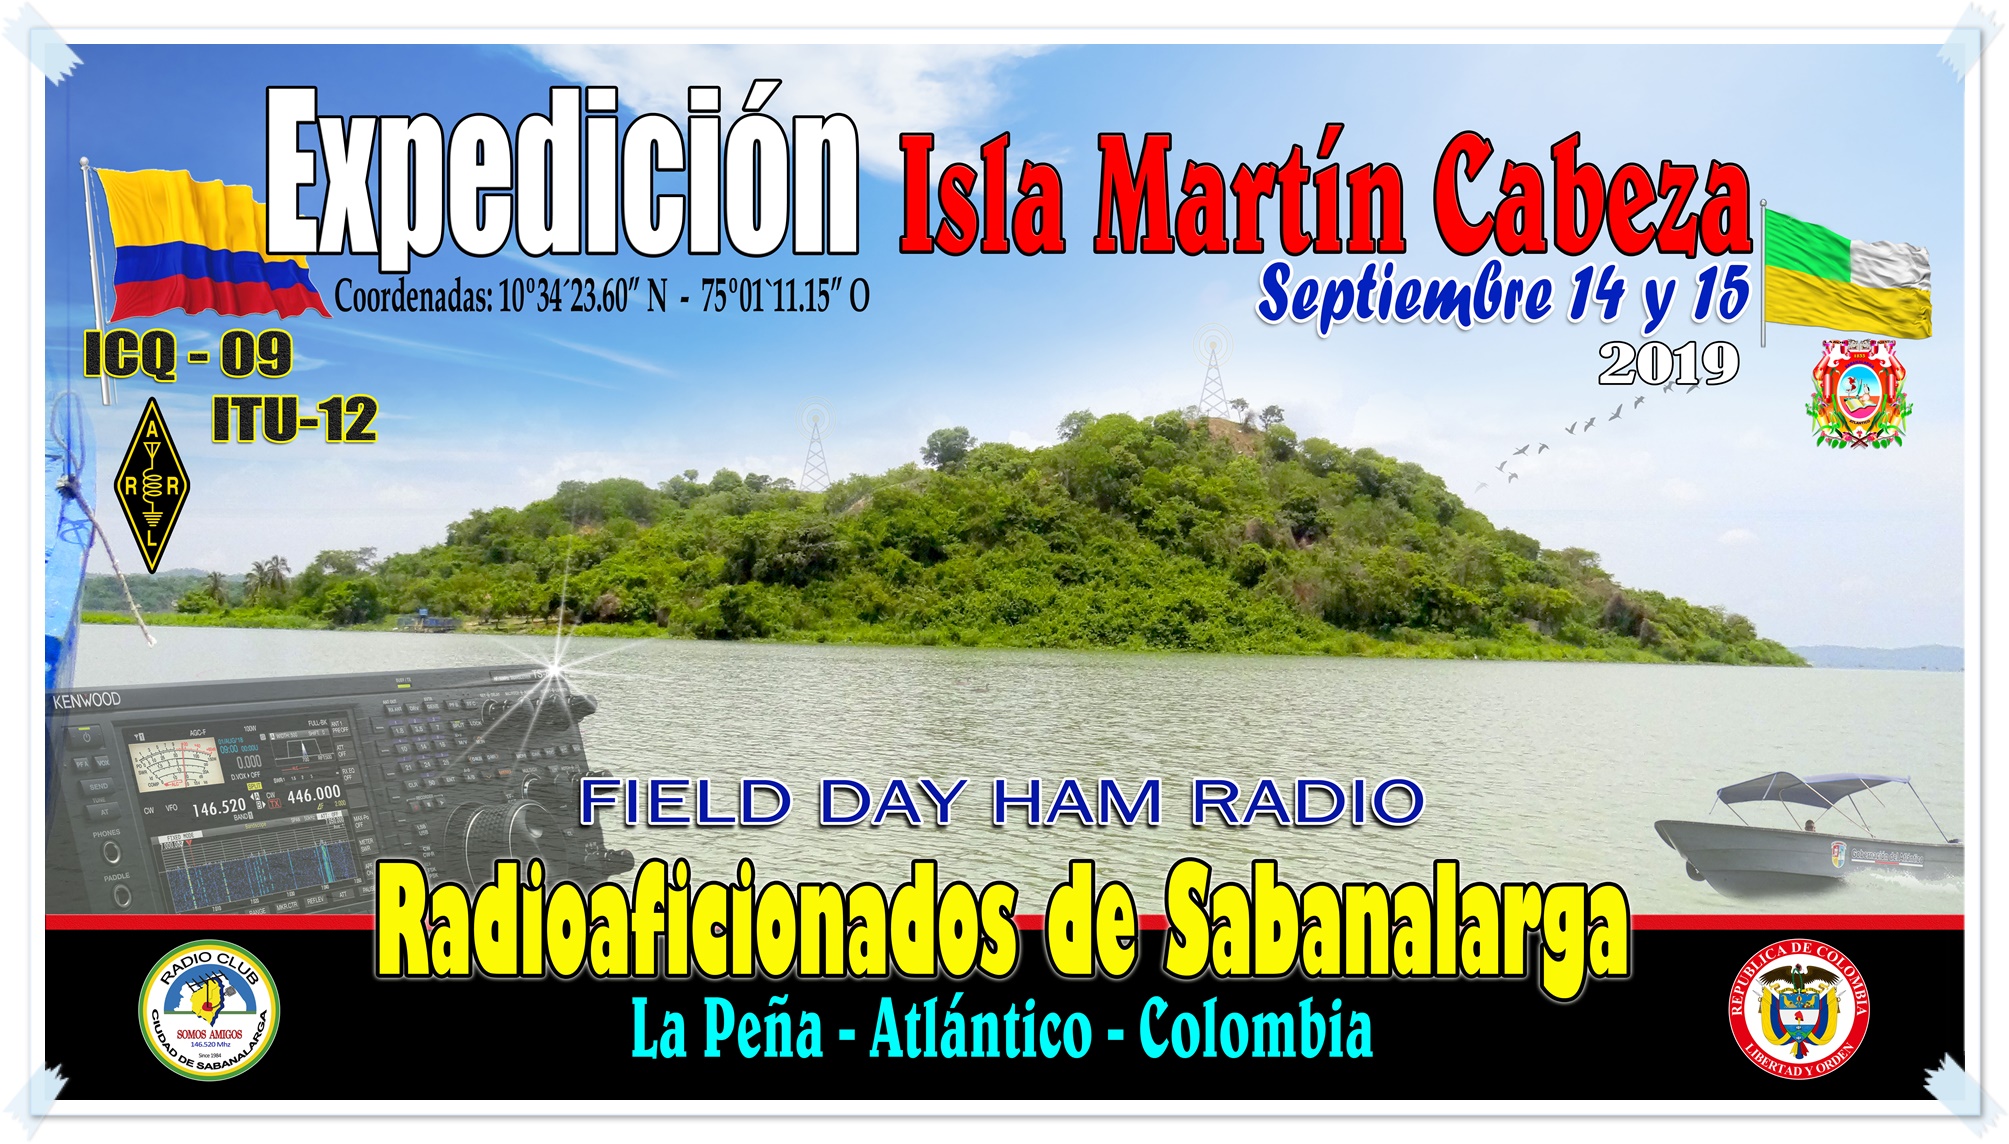 Radioaficionados de Sabanalarga Atlantico Colombia